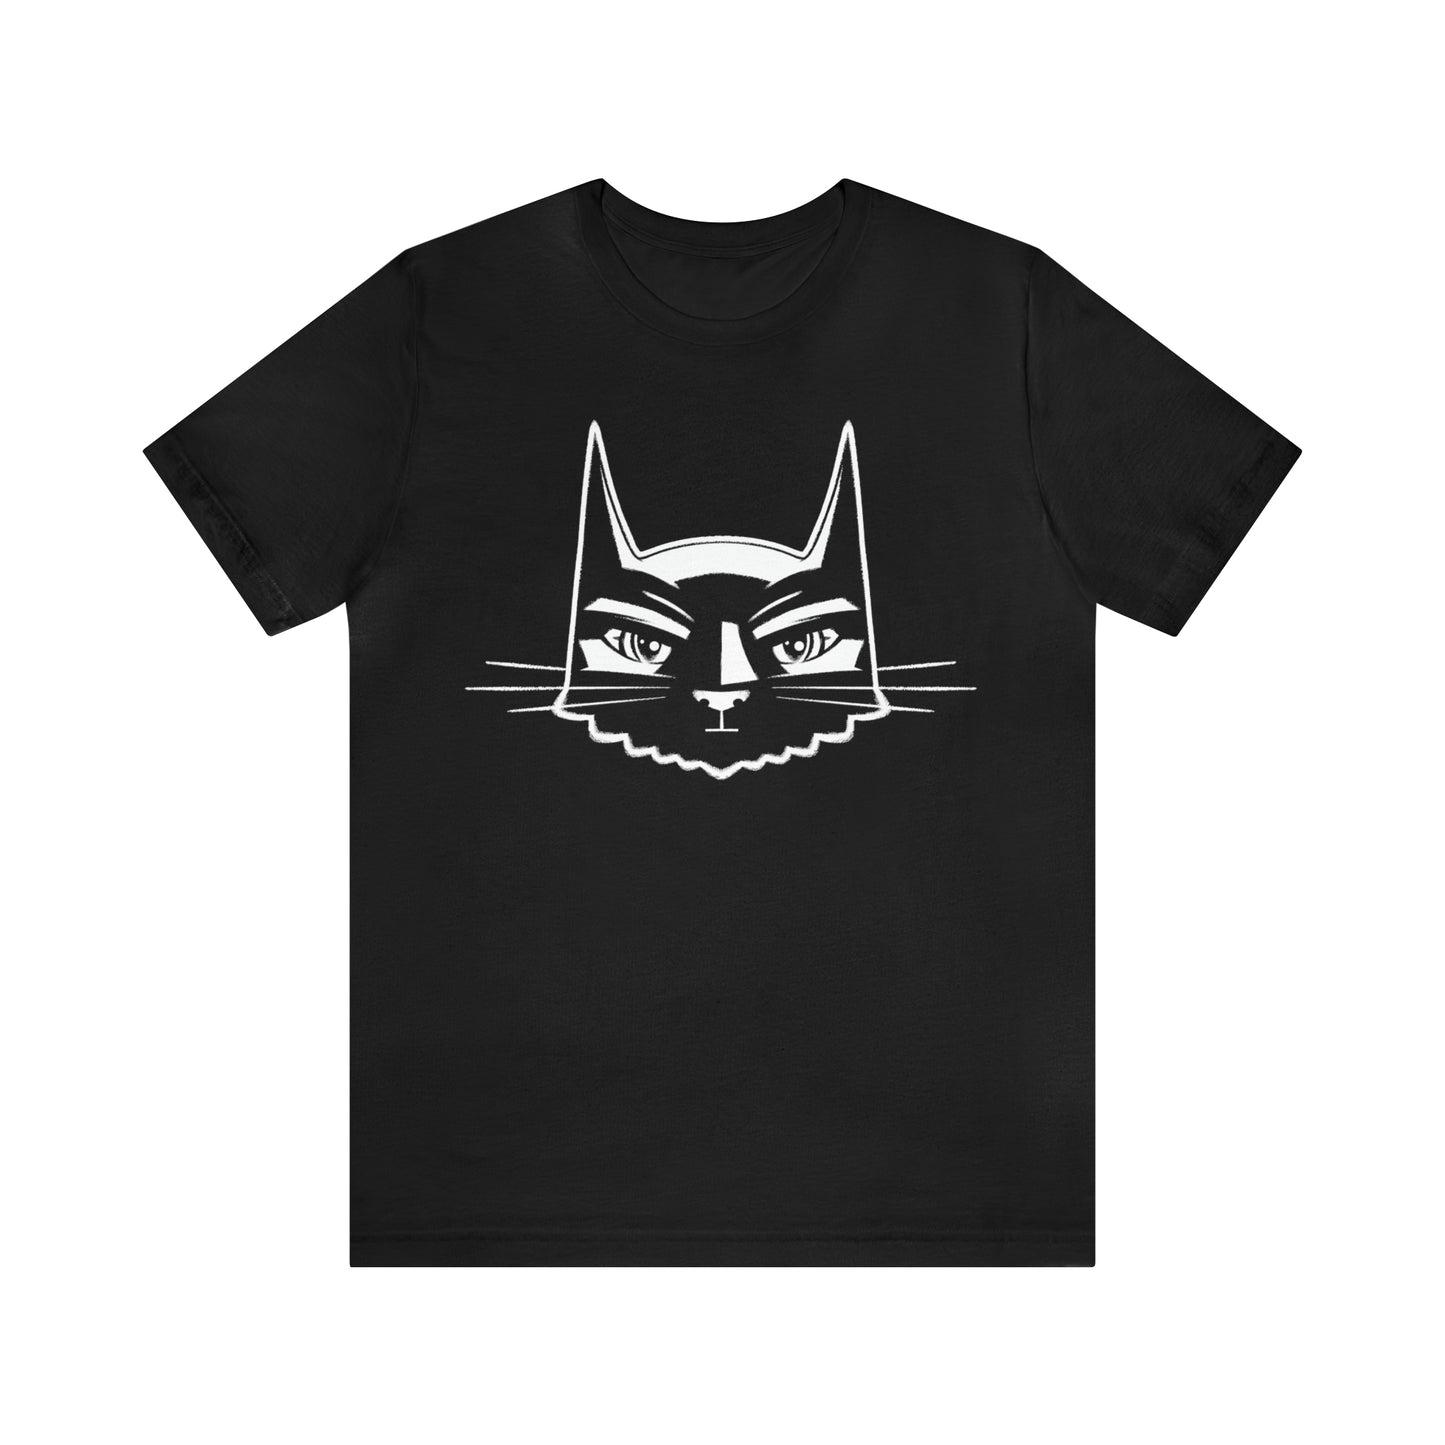 Bat Cat Graphic Tee